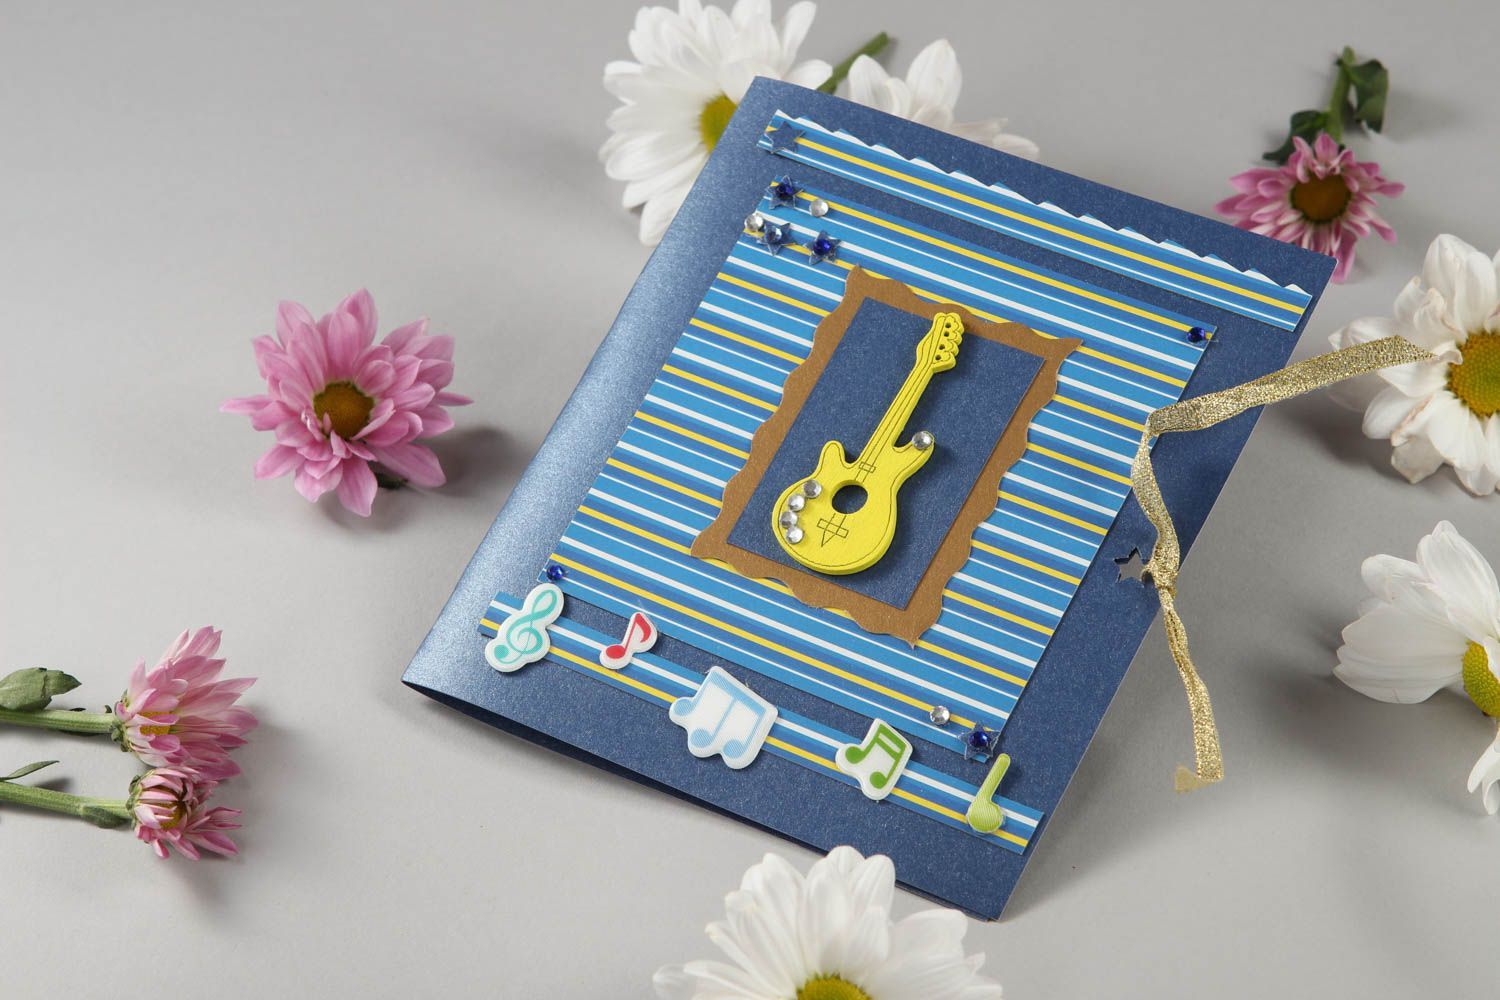 Handmade schöne Glückwunschkarte Design Grusskarte Geschenk Idee Gitarre foto 1